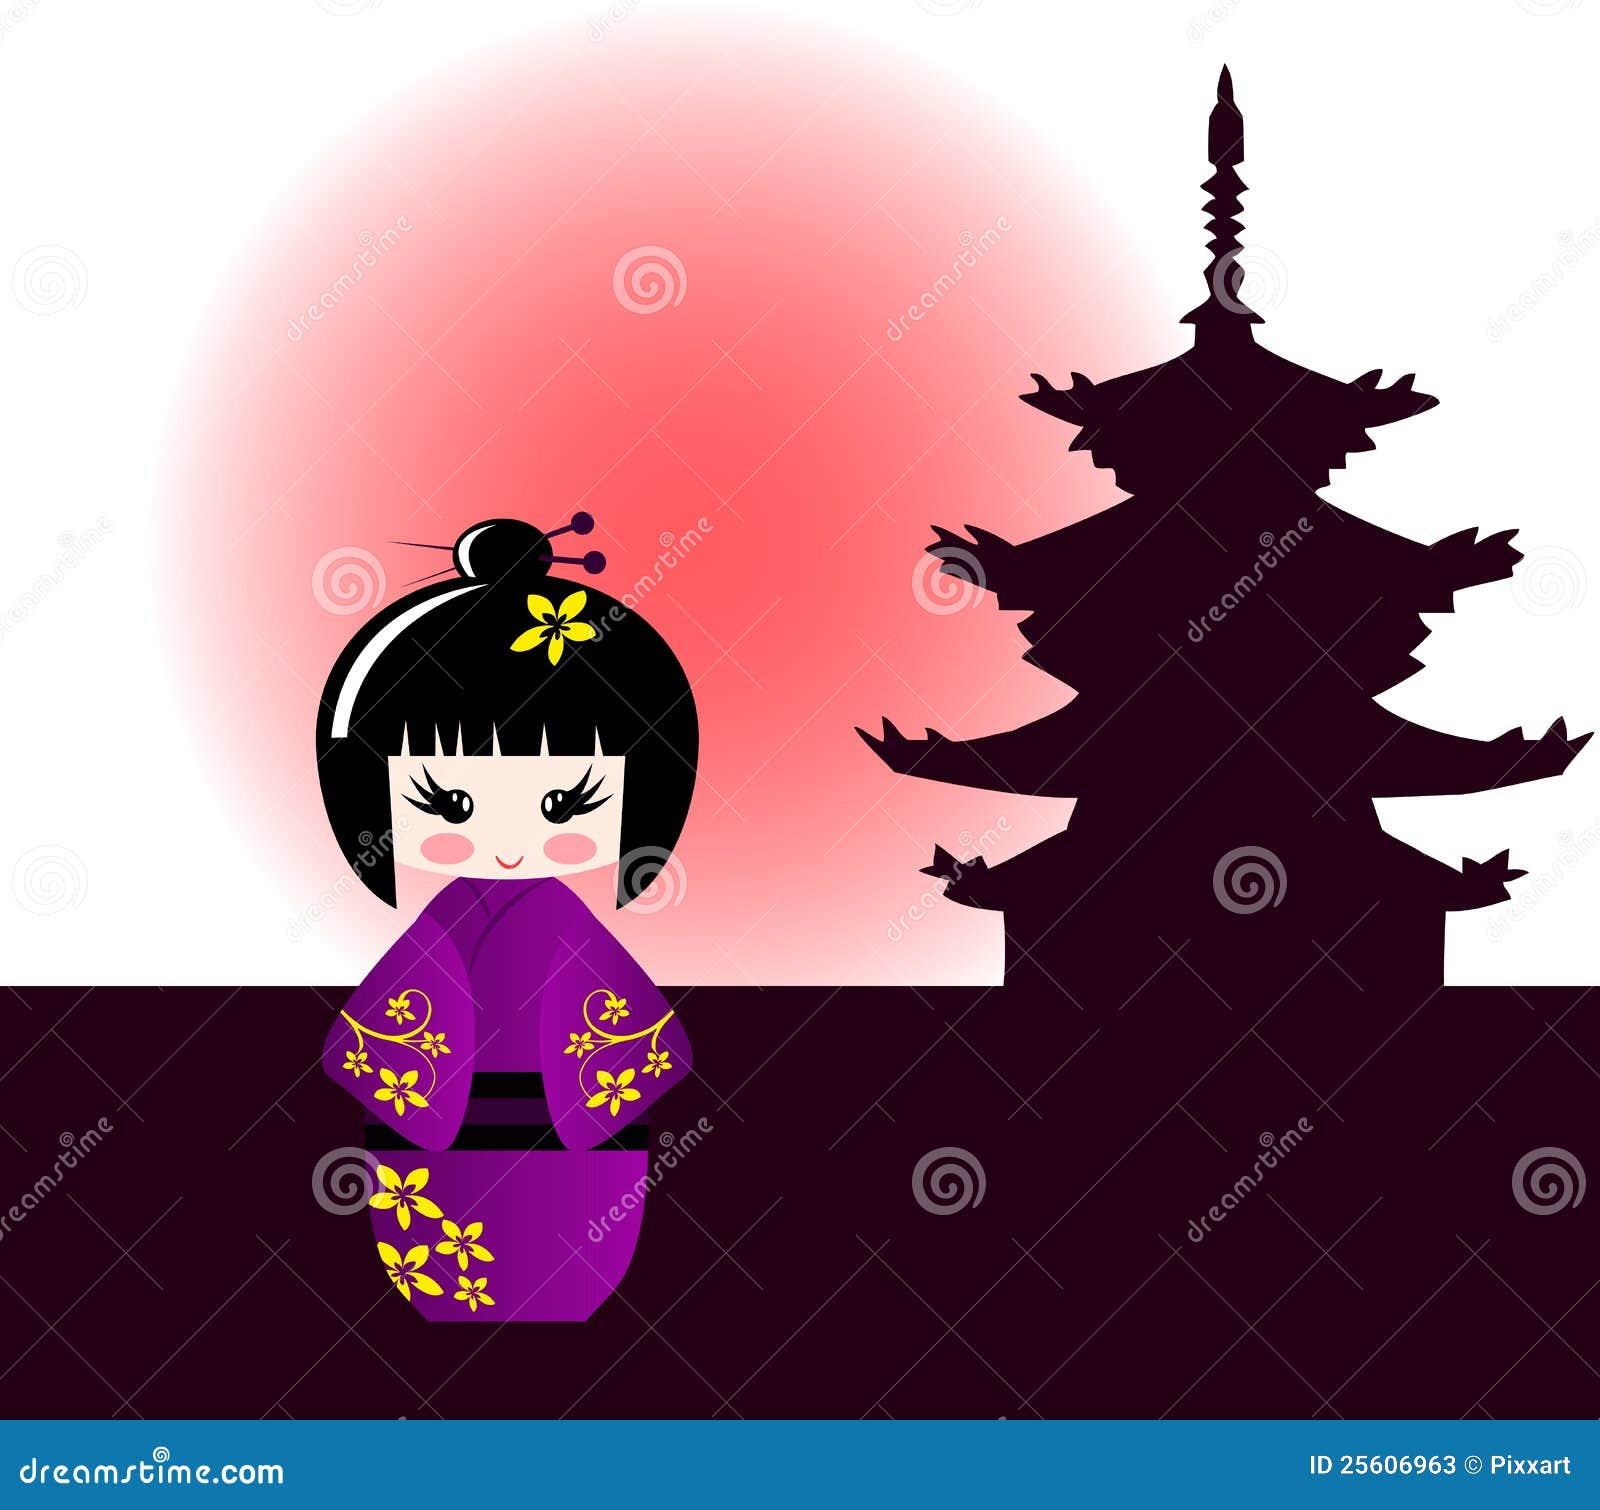 Bambola Di Kokeshi E Tempiale Giapponese Illustrazione Vettoriale -  Illustrazione di bello, carattere: 25606963